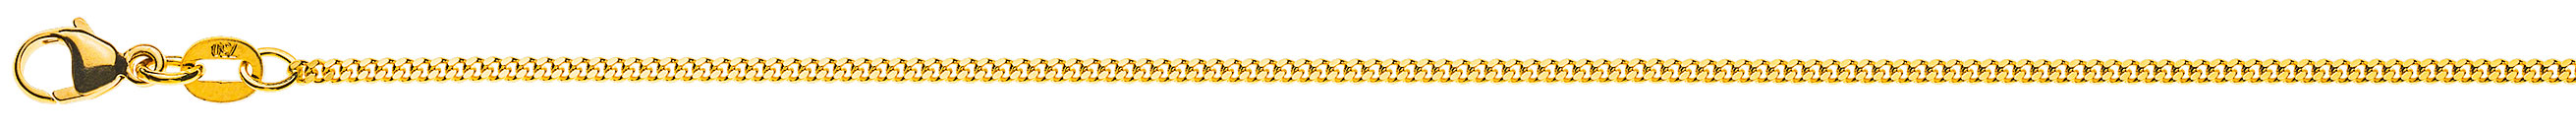 AURONOS Prestige Halskette Gelbgold 18K Panzerkette geschliffen 55cm 1.6mm